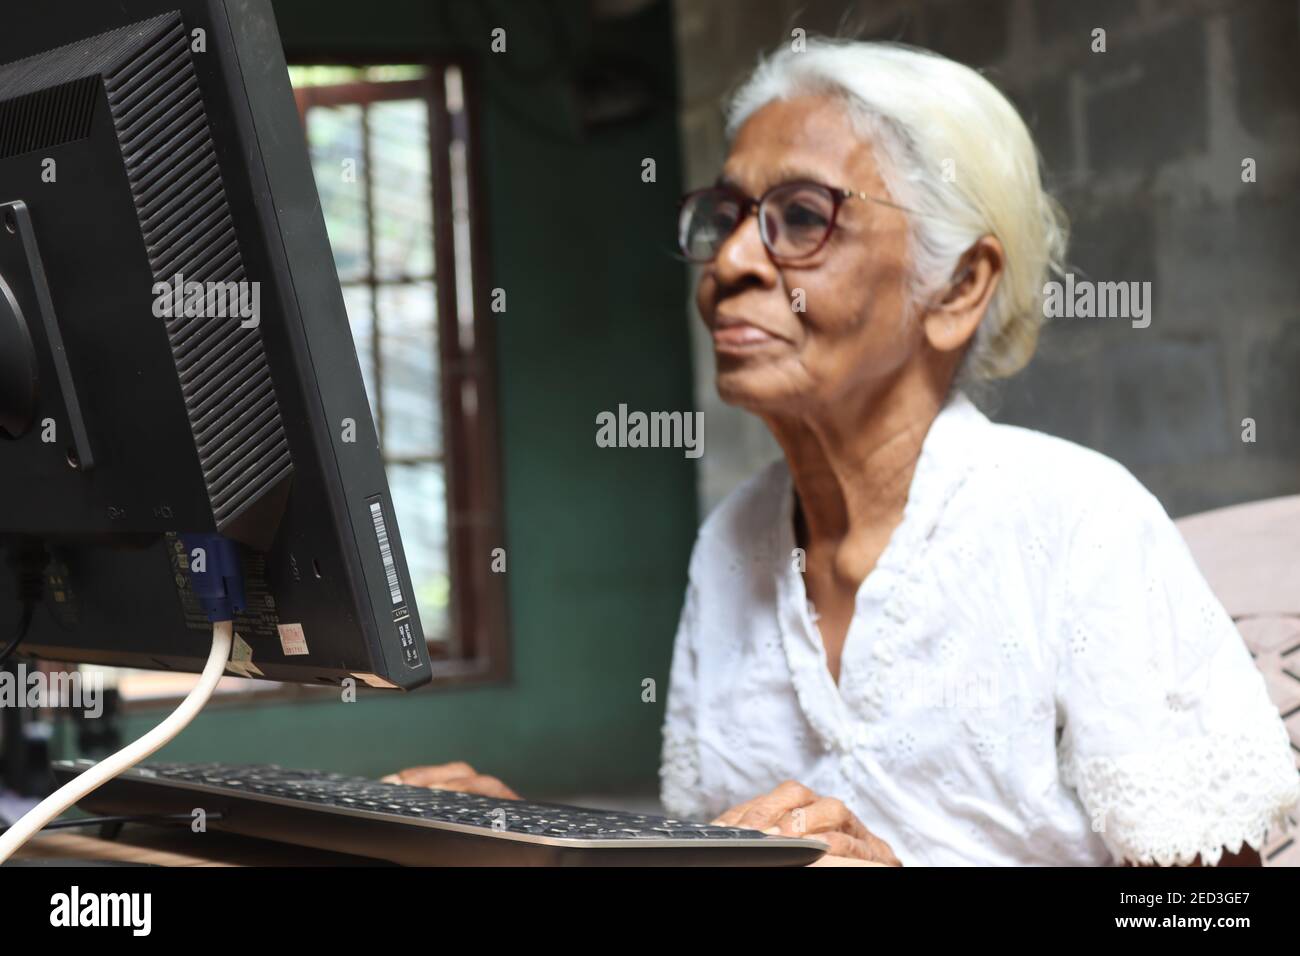 Unter dem Thema "Seniors using current Technology" nutzt Großmutter moderne Technik und Kommunikation zu Hause. Stockfoto